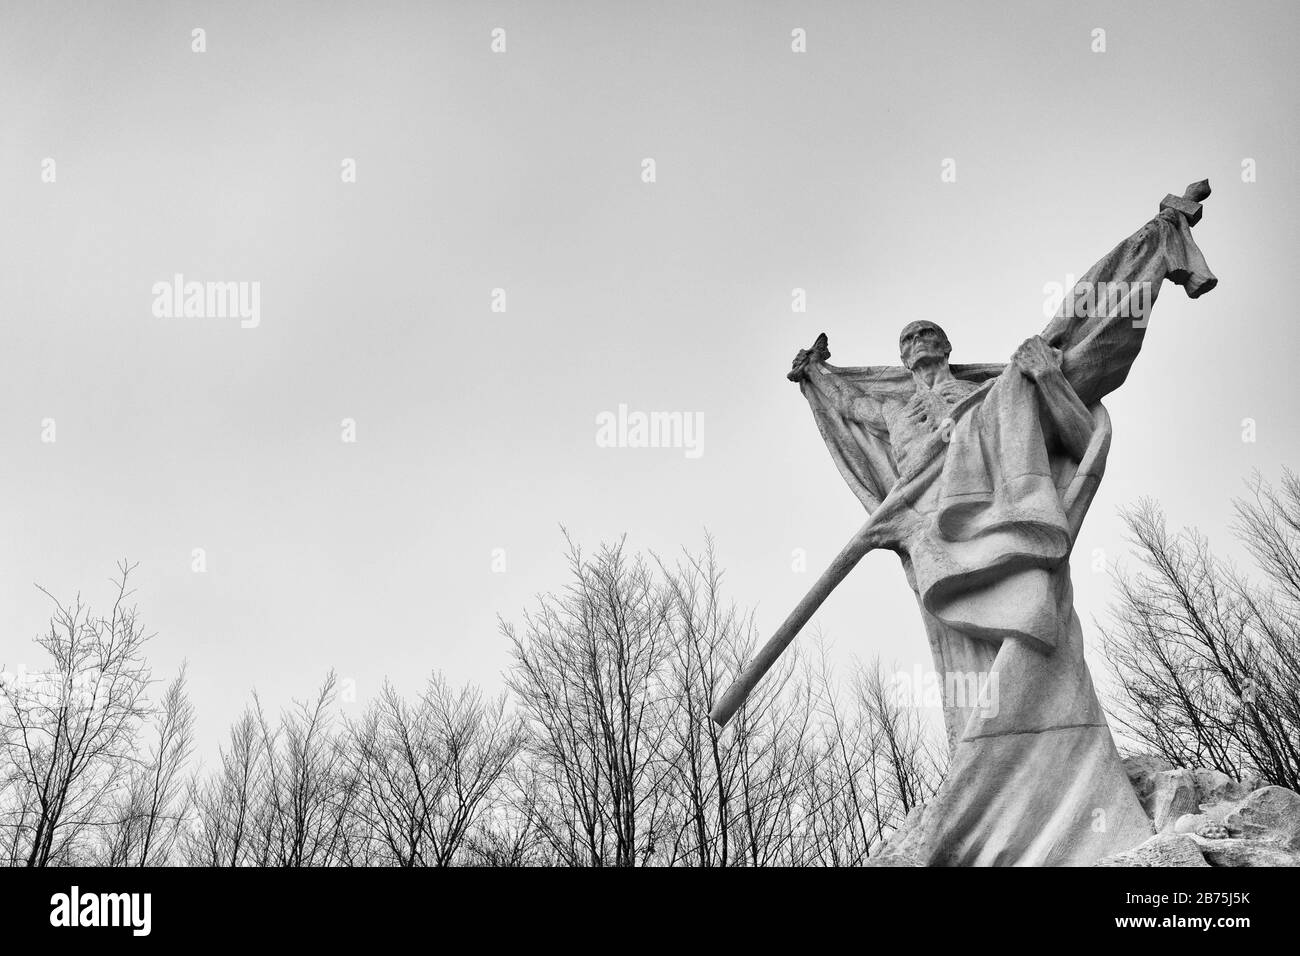 Denkmal auf einem Hügel namens "Le Mort Homme" - der Tote - am westlichen Ufer der Maas, das während der Schlacht um Verdun im Jahr 1916 heftig umkämpft war. Das Denkmal - ein in einem Luftleitblech gewickeltes Skelett trägt die französische Flagge - erinnert an die gefallenen französischen Soldaten. [Automatisierte Übersetzung] Stockfoto